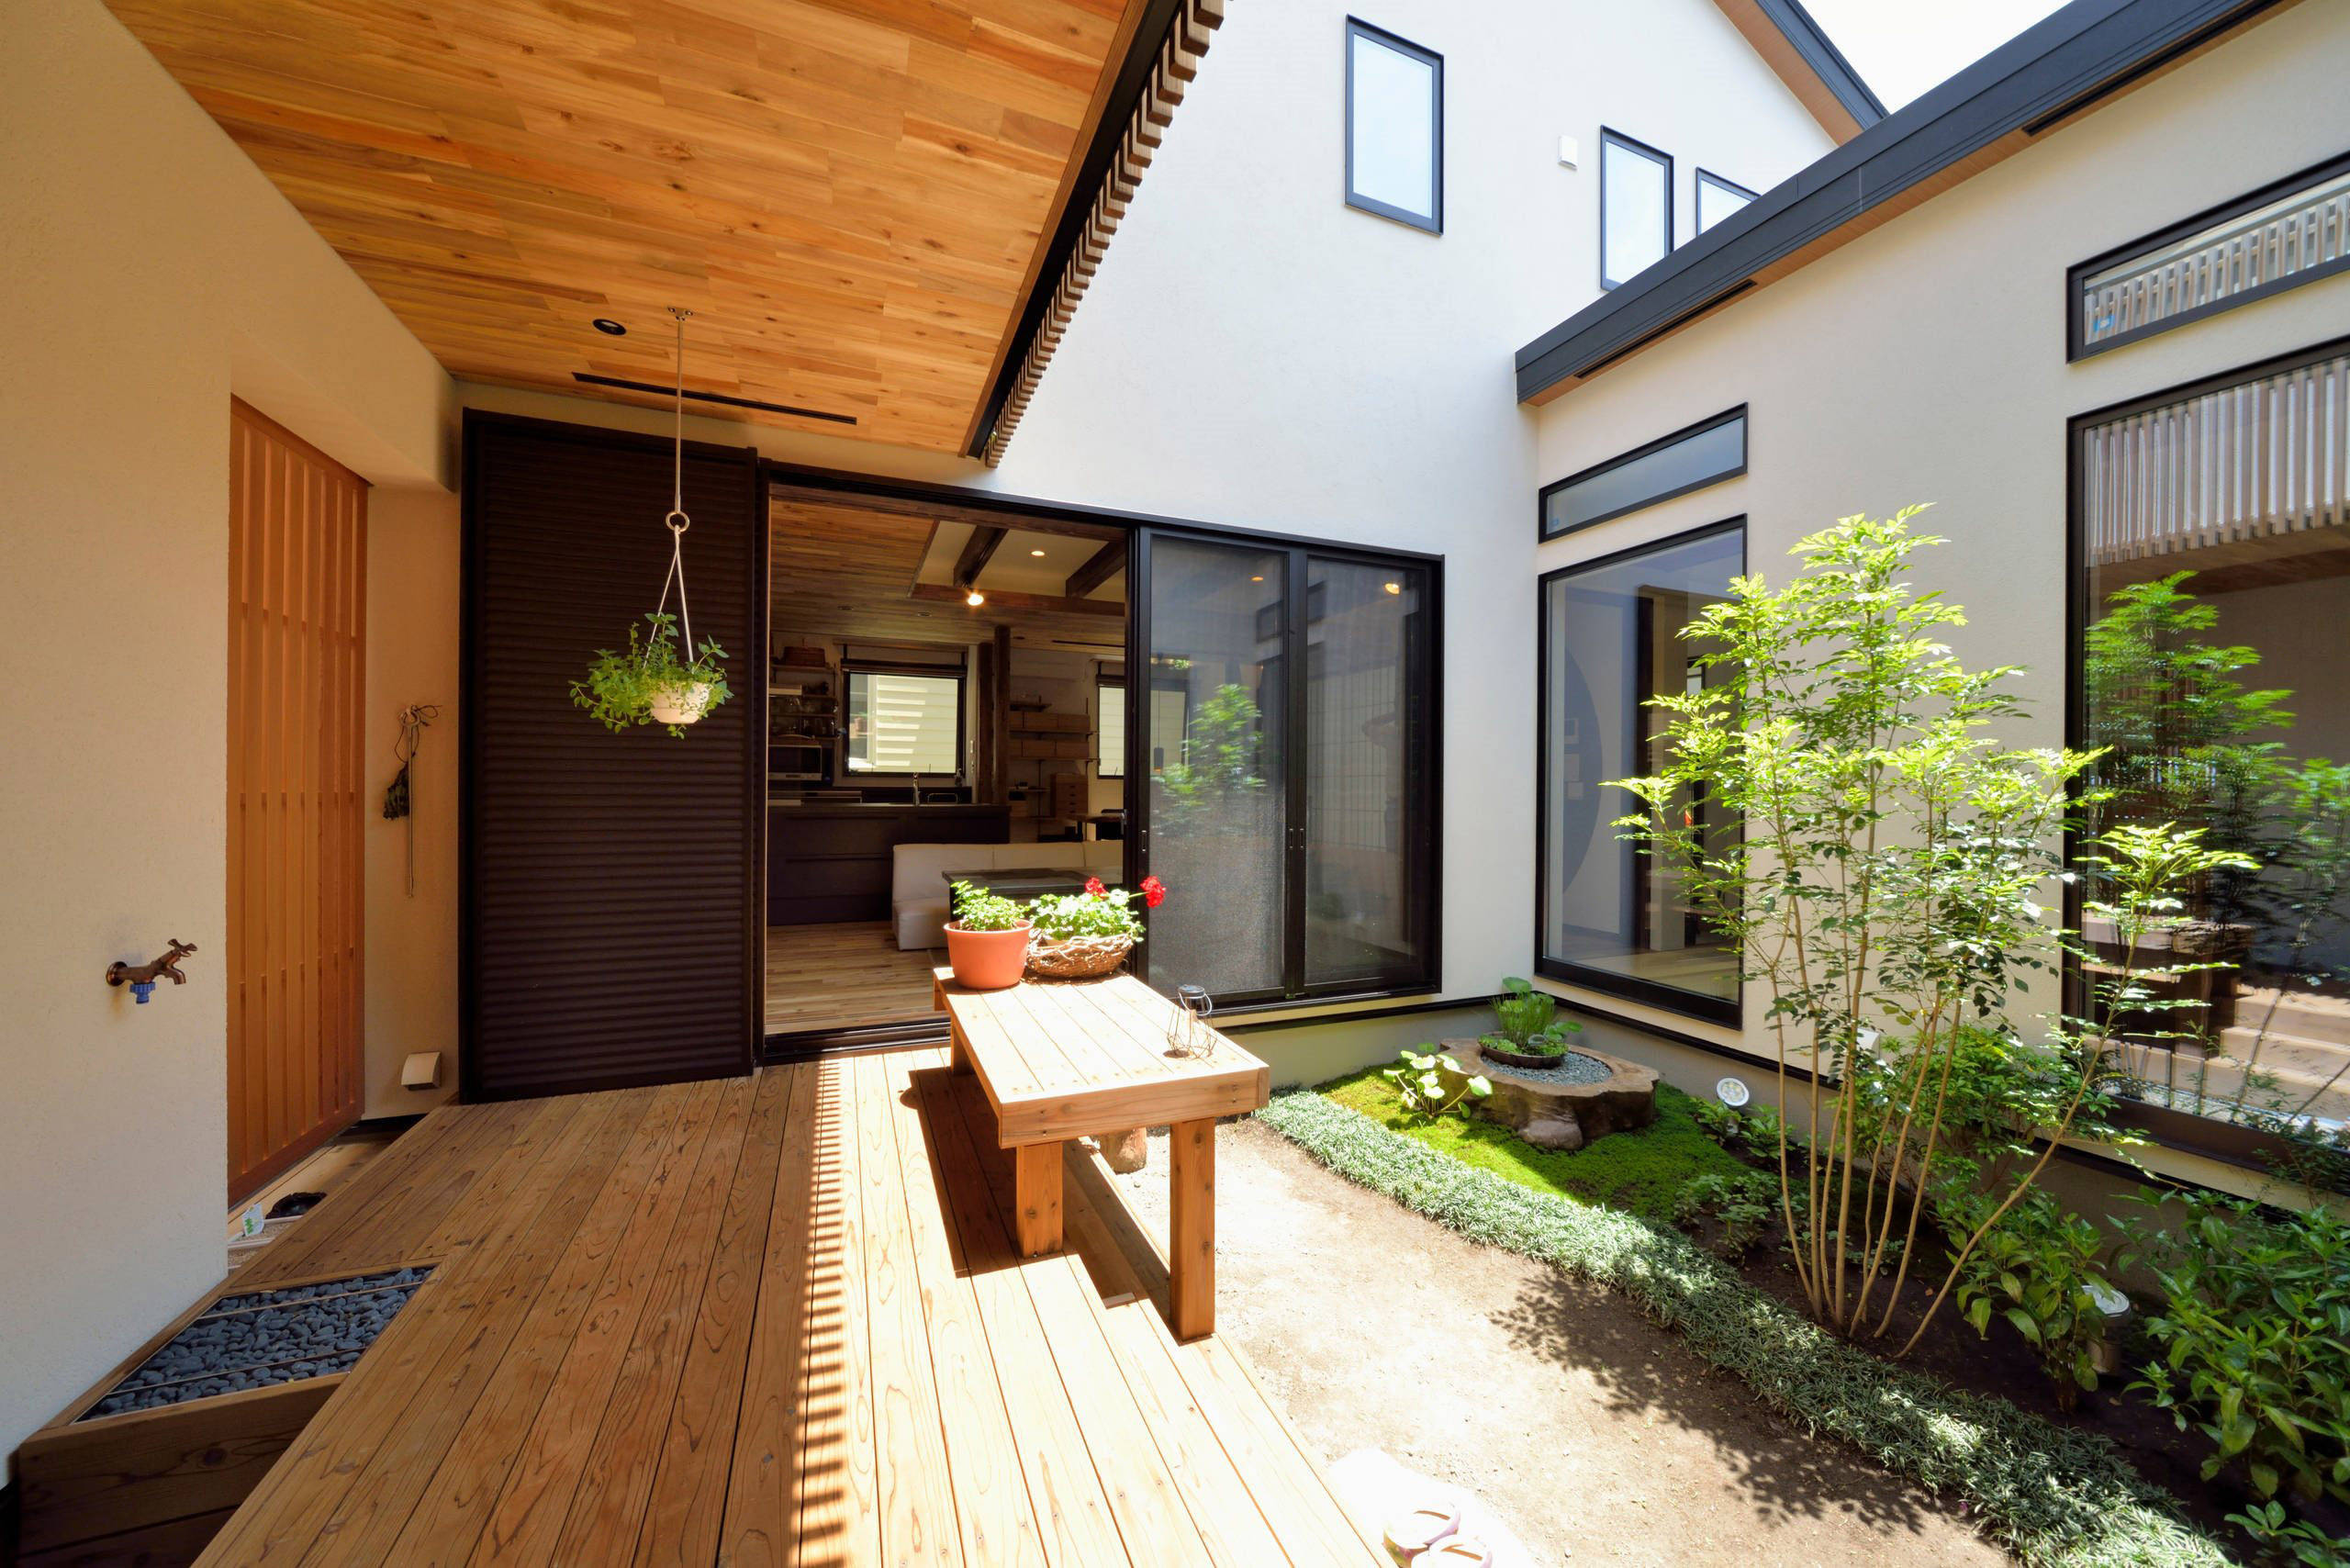 庭院设计:40㎡小庭院花园设计,打造一个人人羡慕的私家小花园